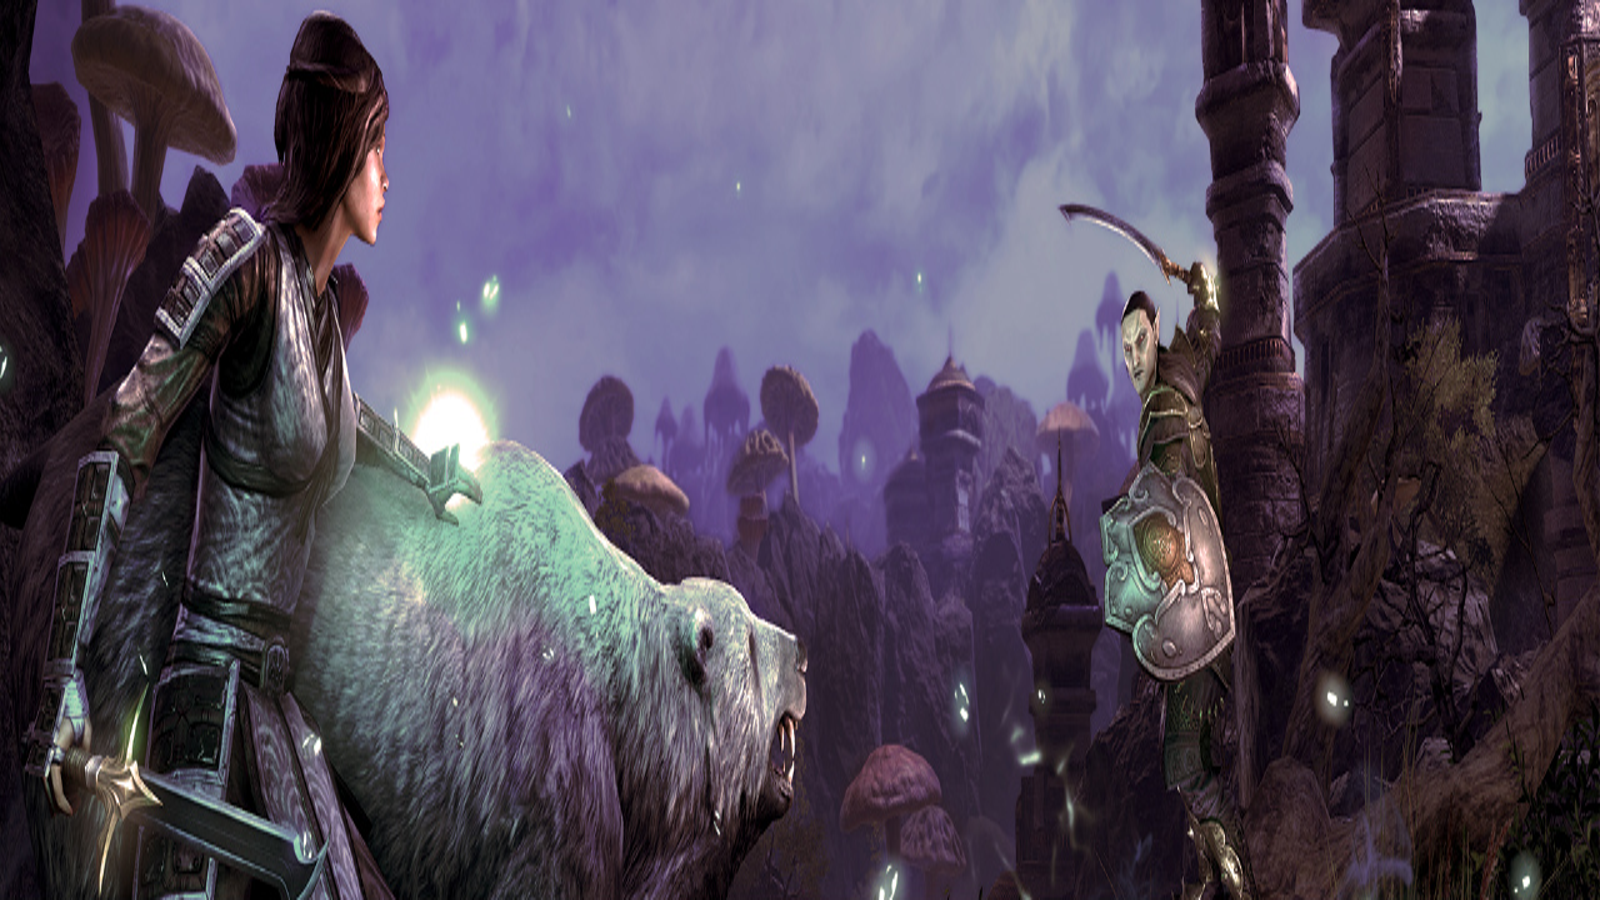 The Elder Scrolls Online: Morrowind review